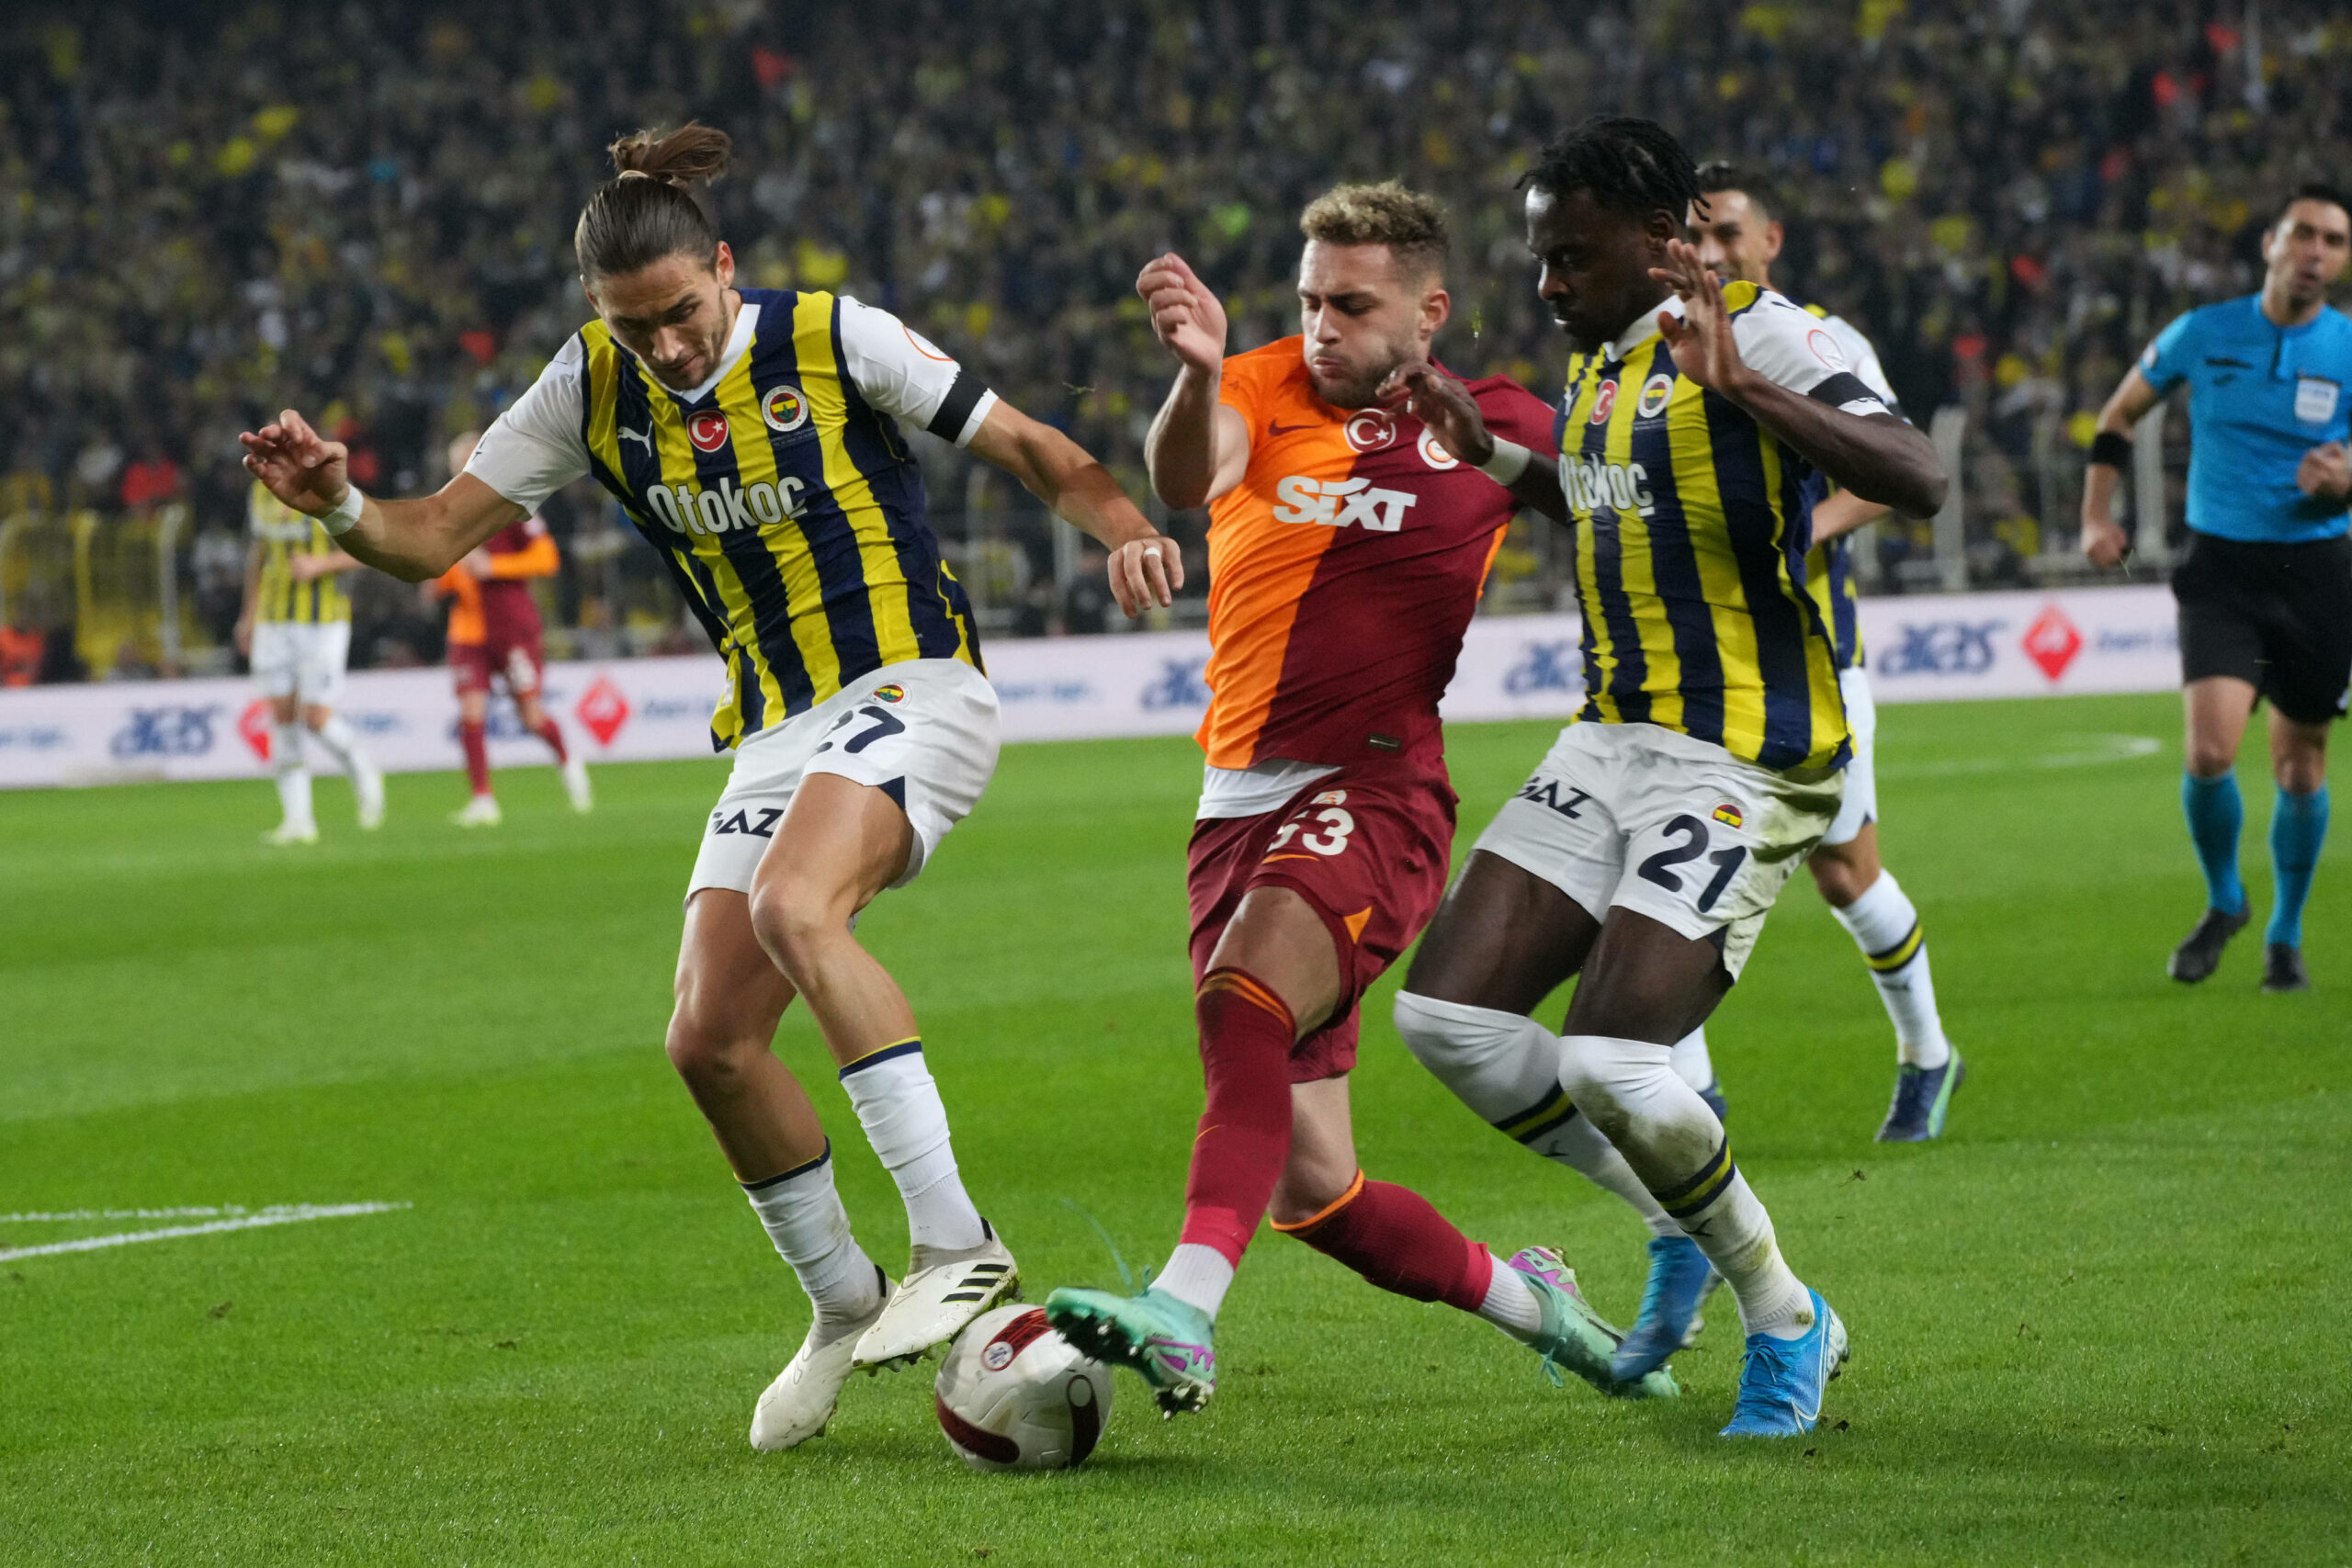 Spieler von Fenerbahce und Galatasaray Istanbul im Duell um den Ball